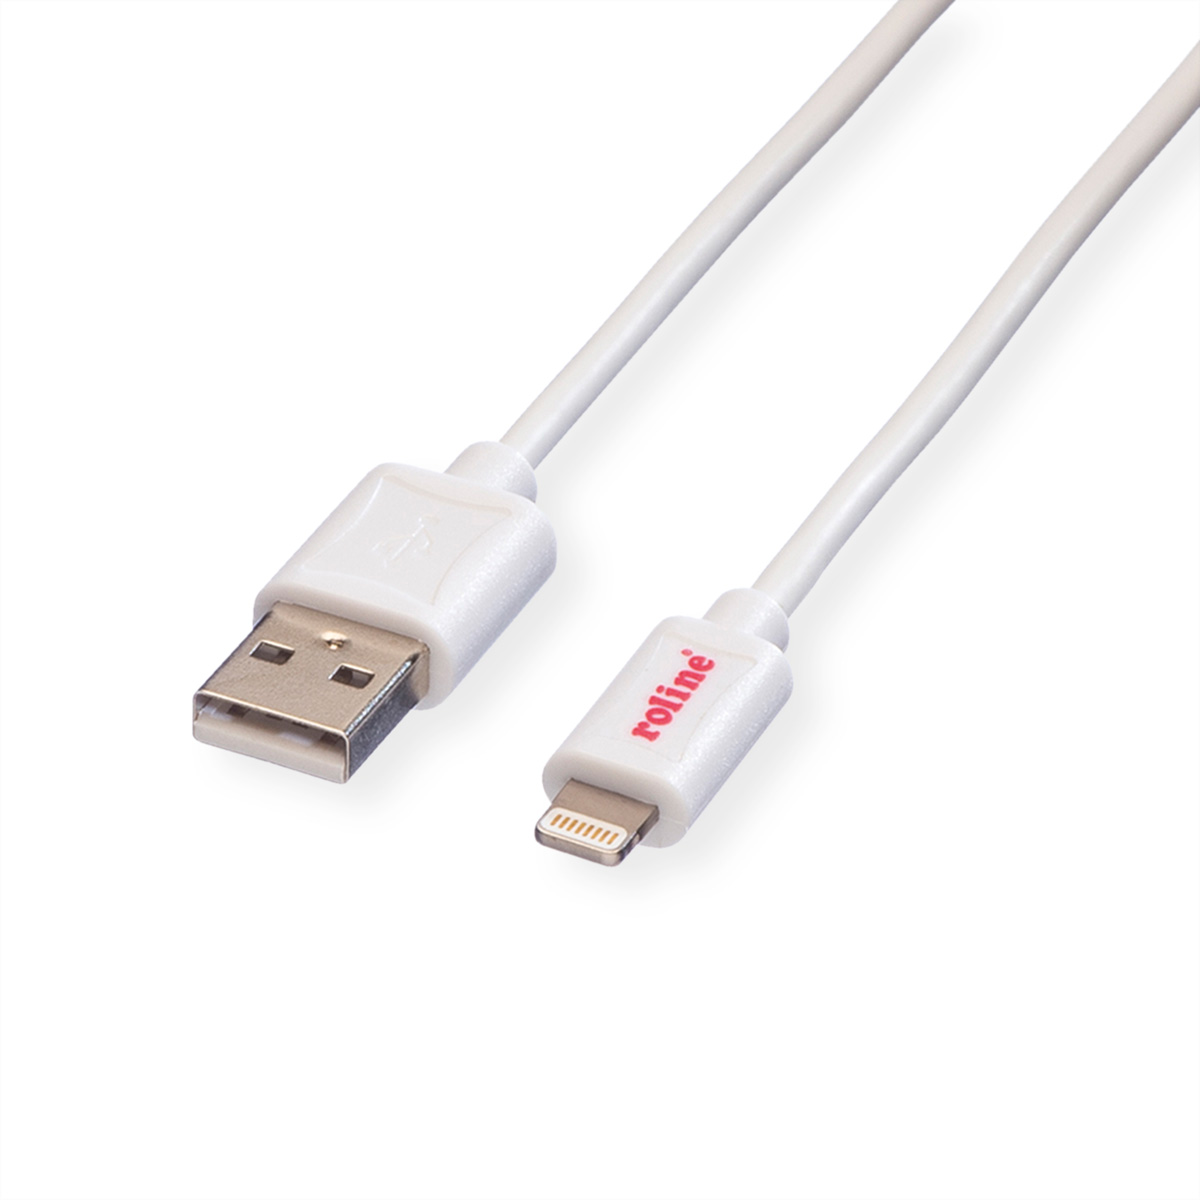 ROLINE USB 2.0 Sync- & Ladekabel für Apple Geräte mit Lightning Connector, weiss